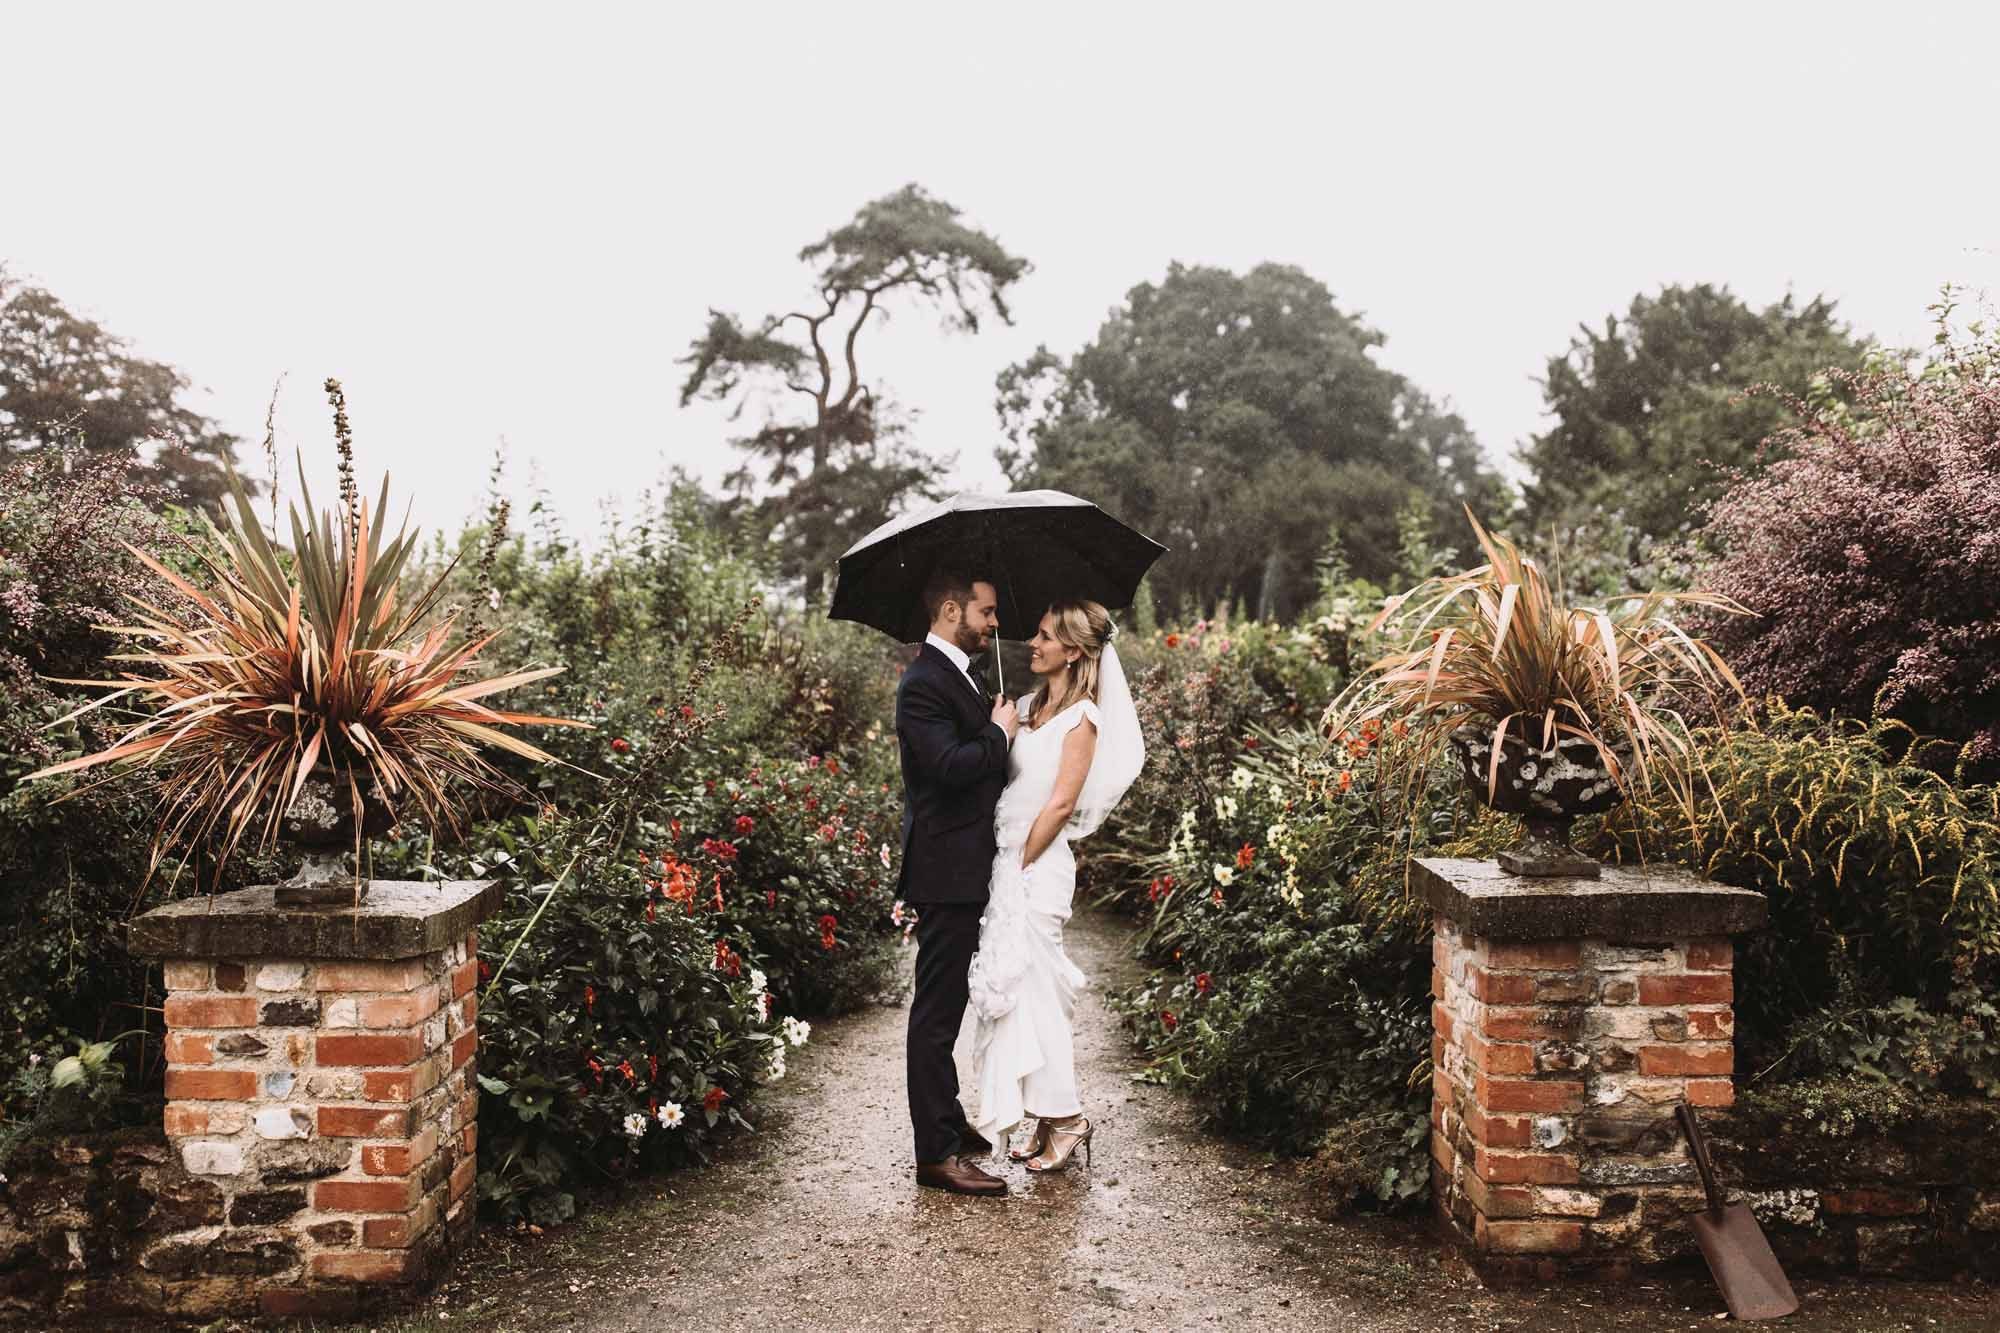 A bride and groom under an umbrella in a garden